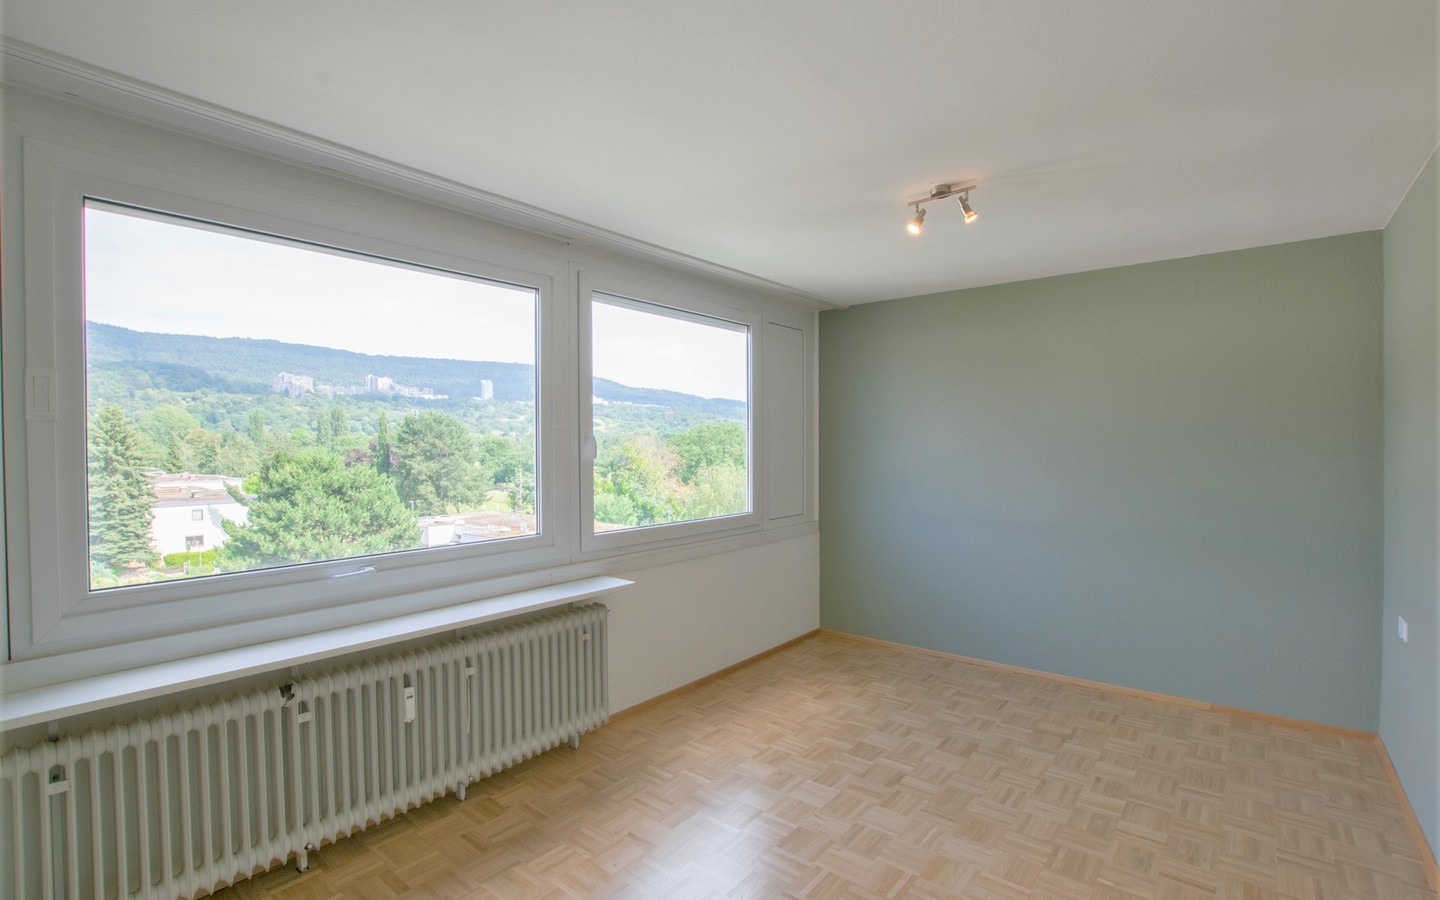 Zimmer 2 - Schöne Aussichten: Renovierte Maisonettewohnung mit Terrasse und tollem Ausblick!